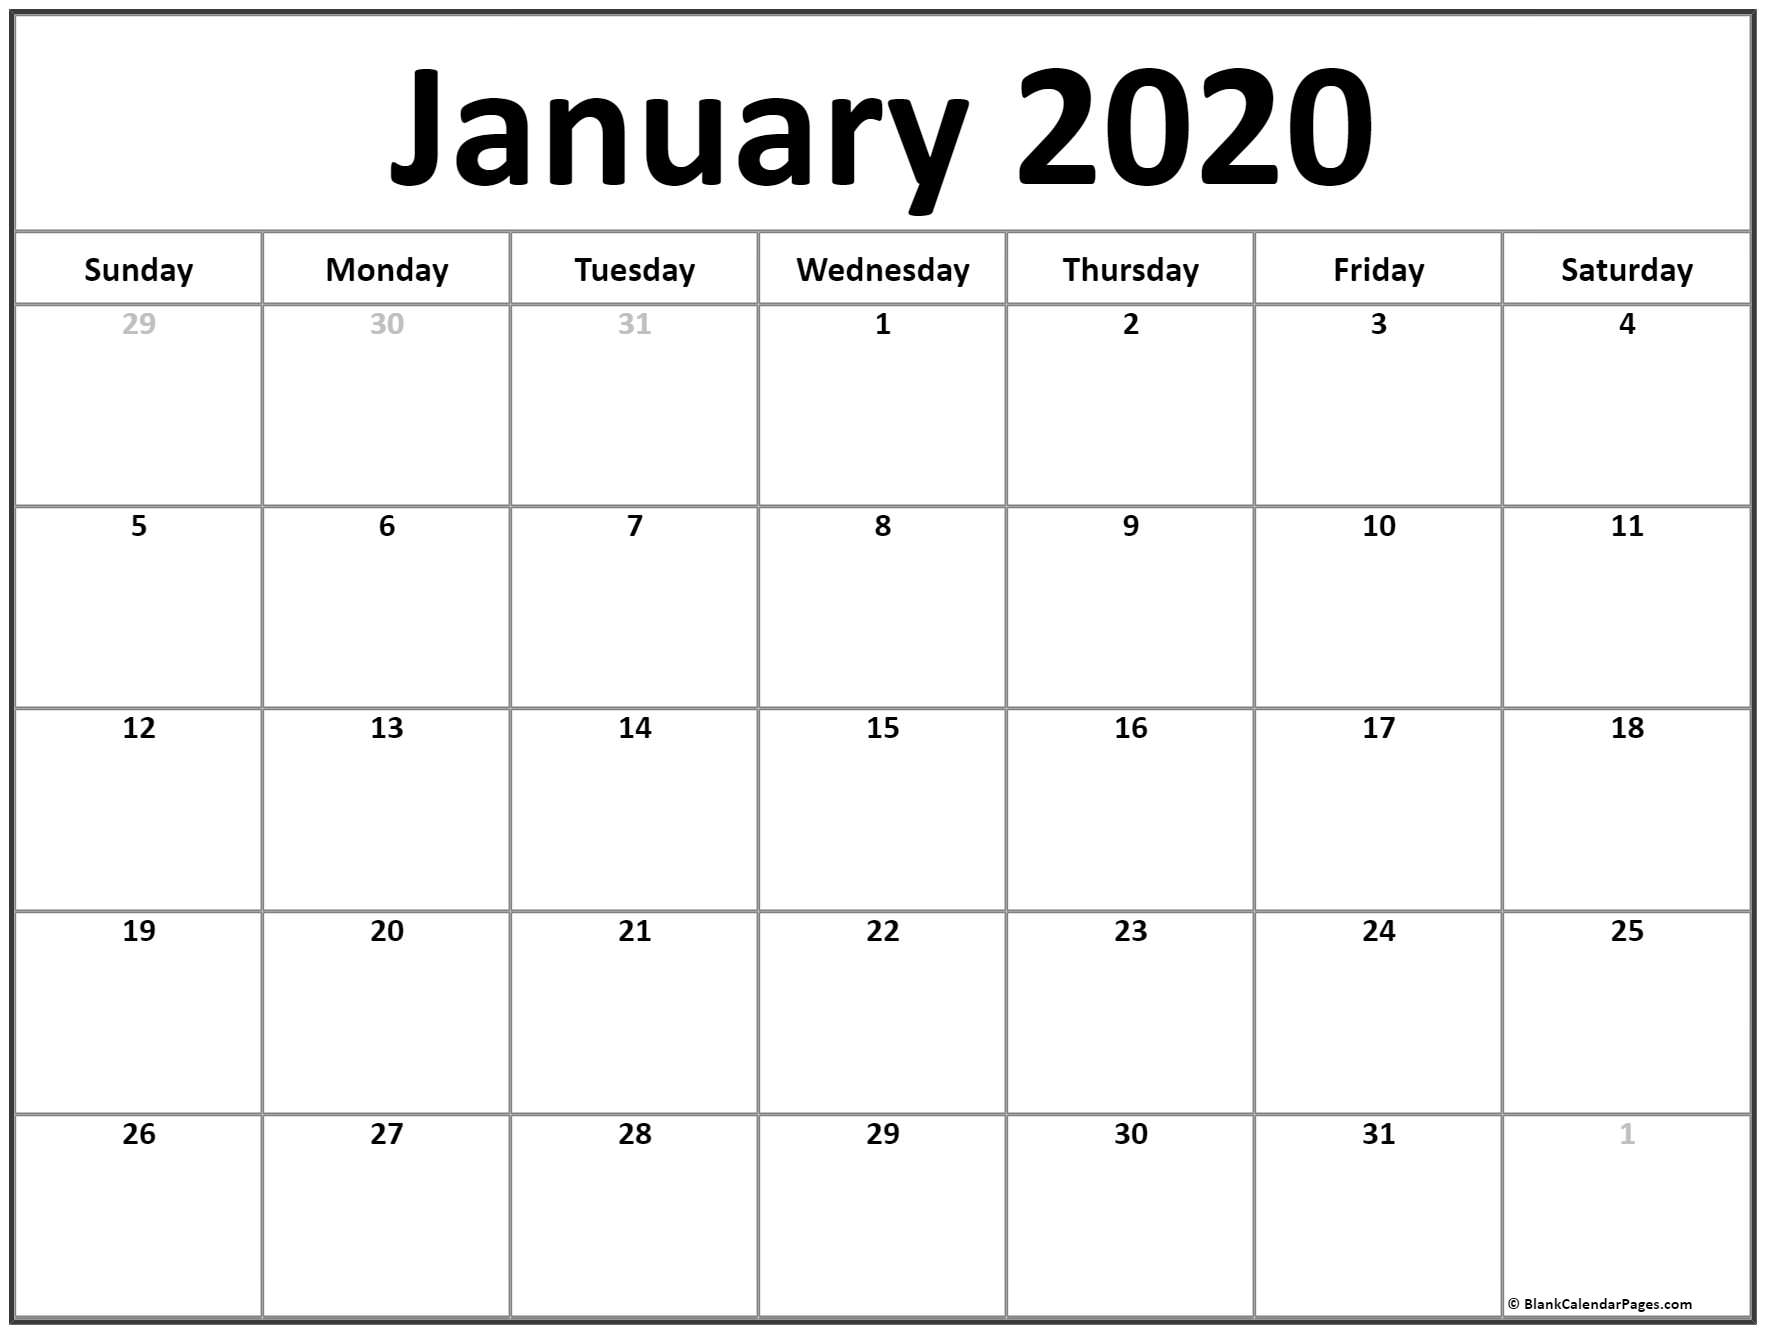 January 2020 Calendar For Kids - Togo.wpart.co